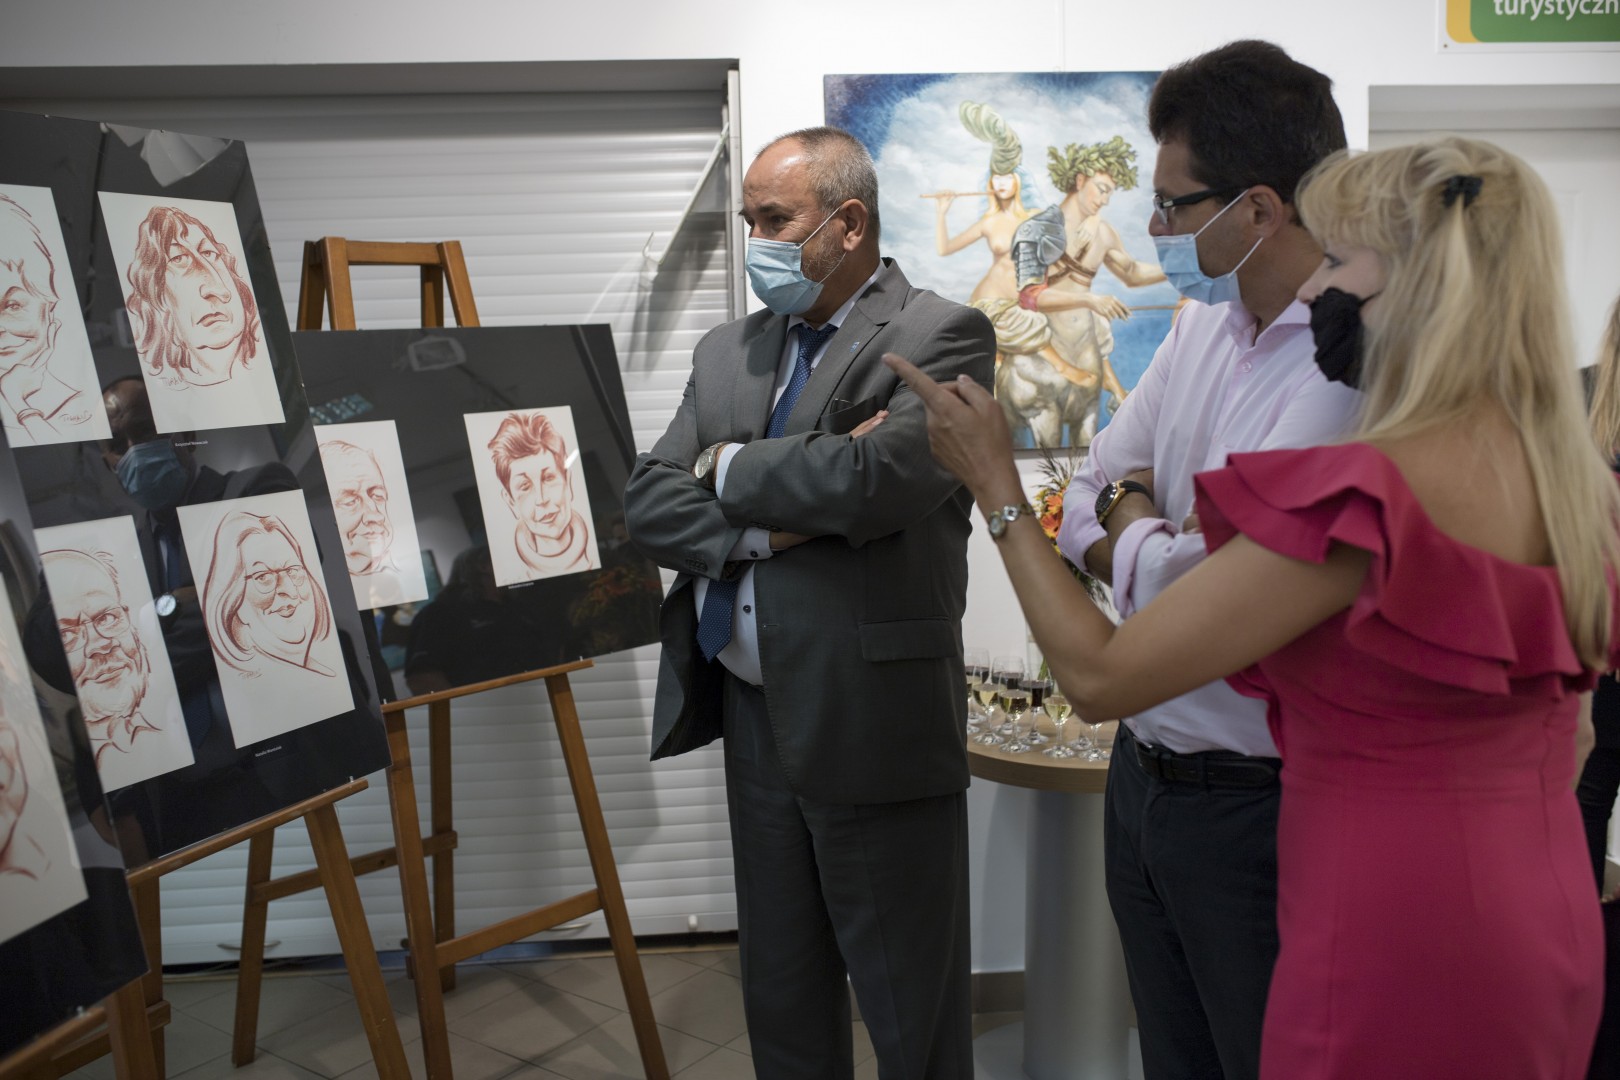 Świat malowany - malarstwo i karykatura/Otwarcie wystawy malarskiej Tigrana Yardikyana/ 2020.09.03, 